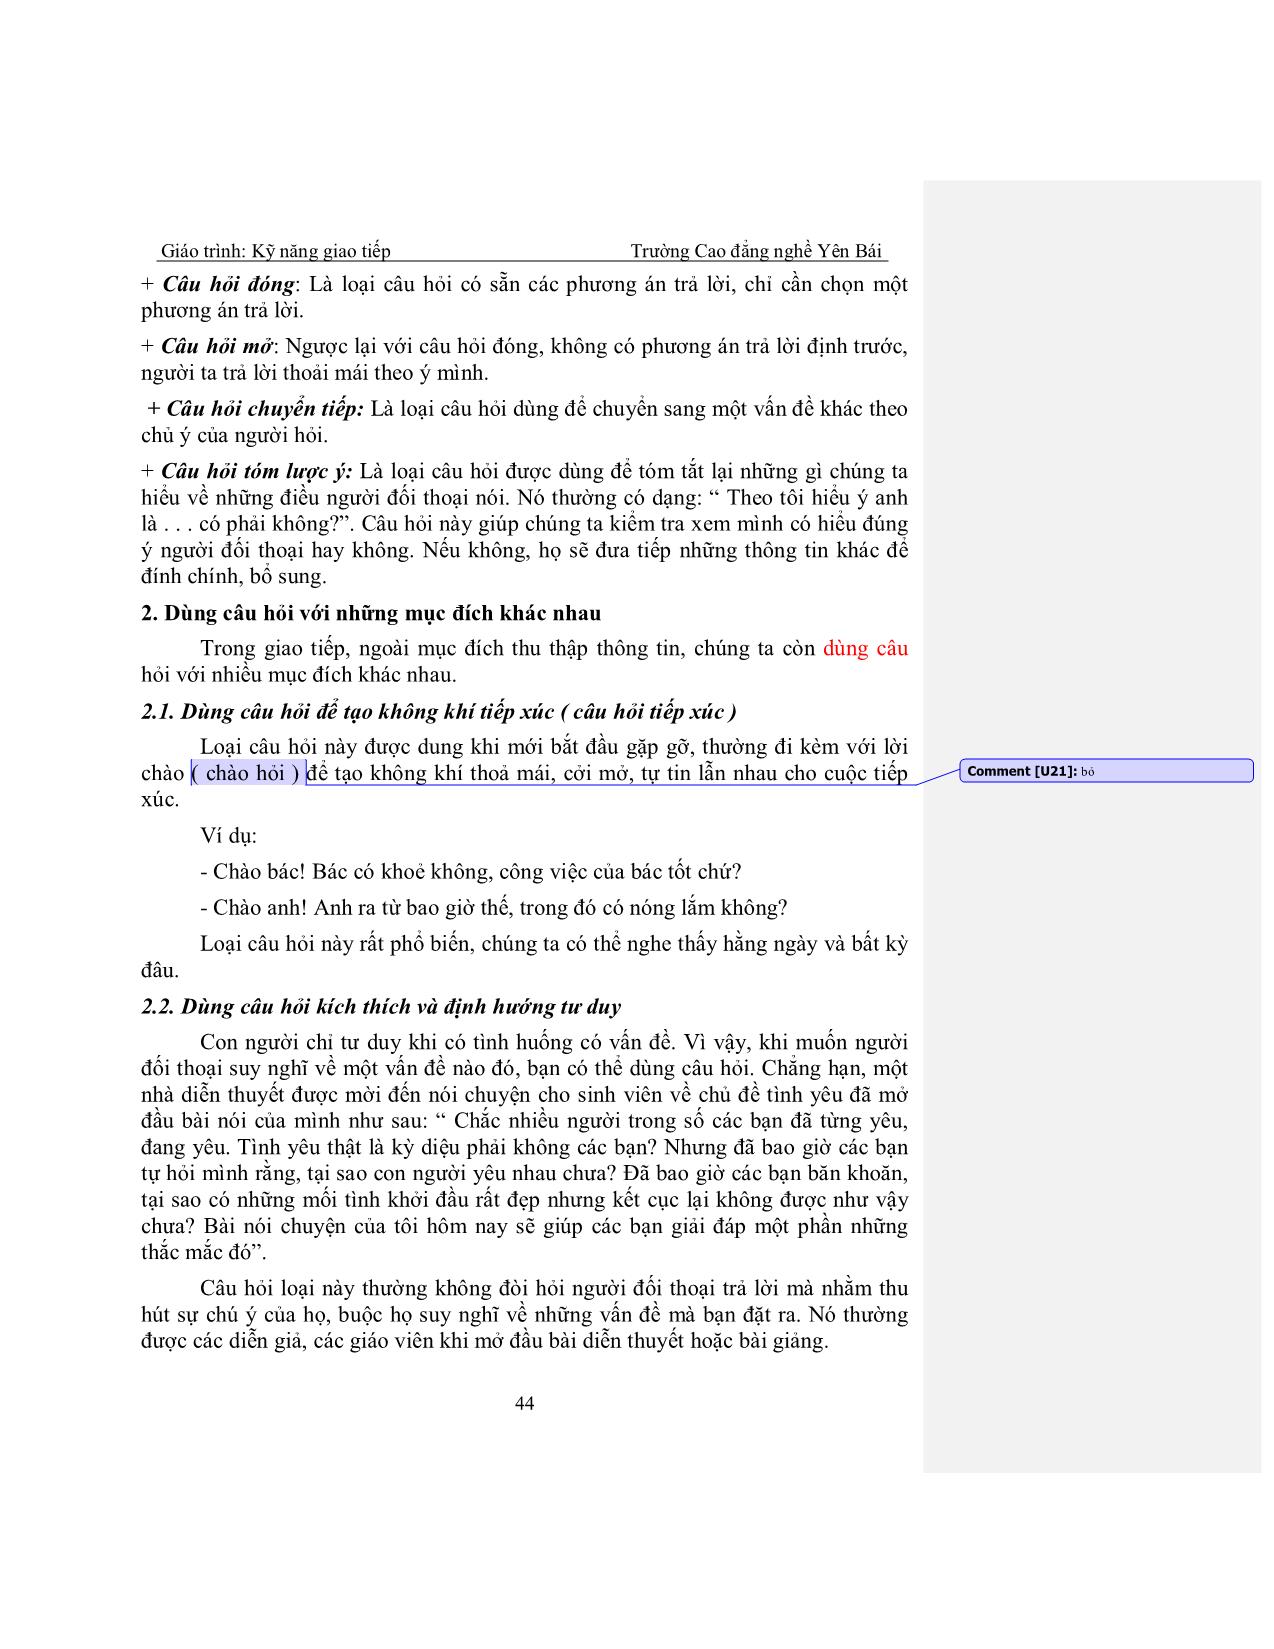 Giáo trình Kỹ năng giao tiếp (Phần 2) trang 10